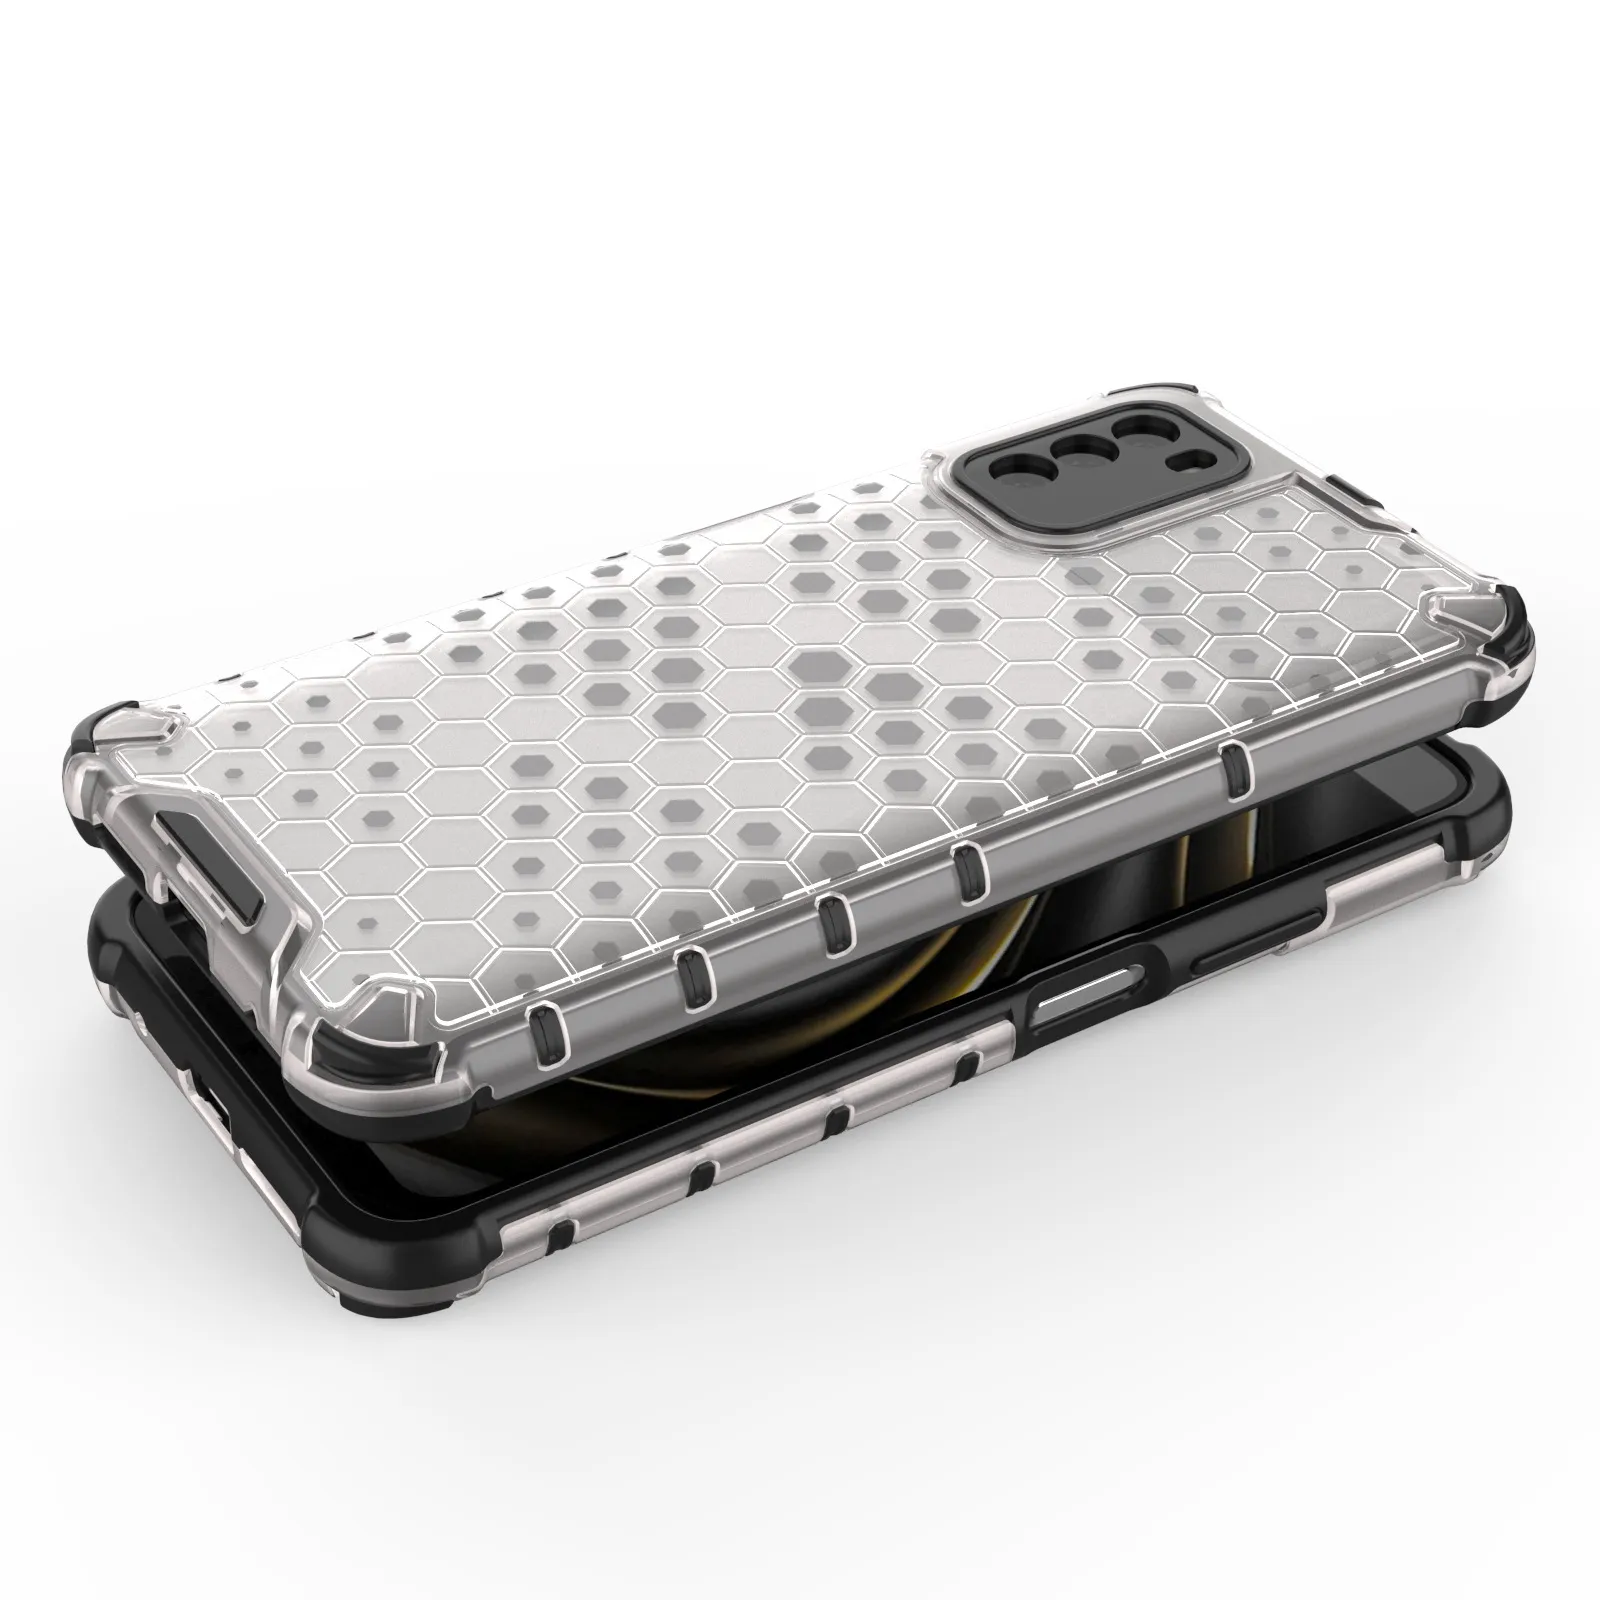 Beschermende zaken voor POCO M3 hybride schokbestendige mobiele telefoon geval transparant en bestendig voor Xiaomi POCO M3